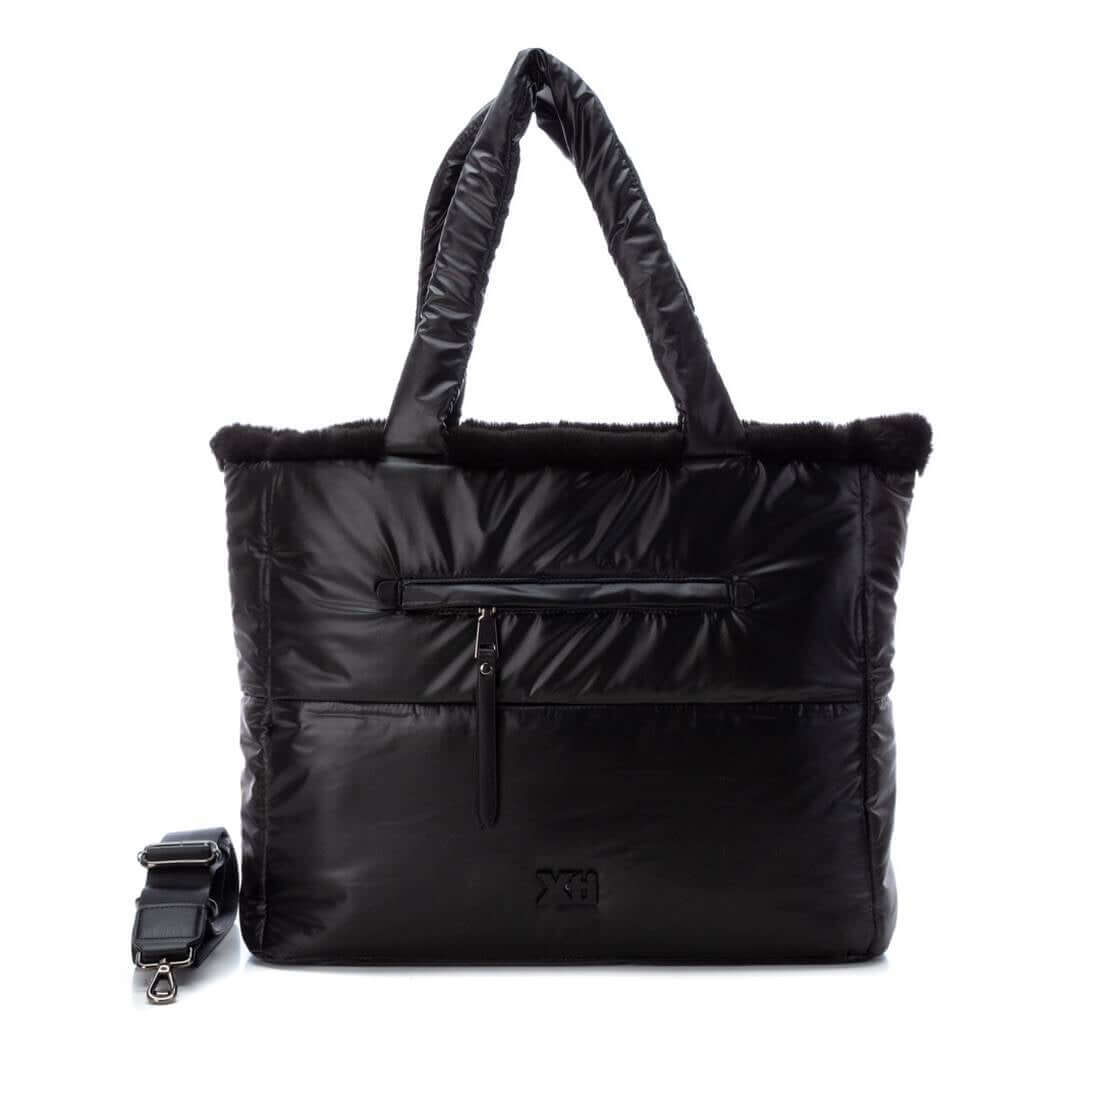 XTI Black Textile Ladies Bag (reversible & includes a separate pouch bag)